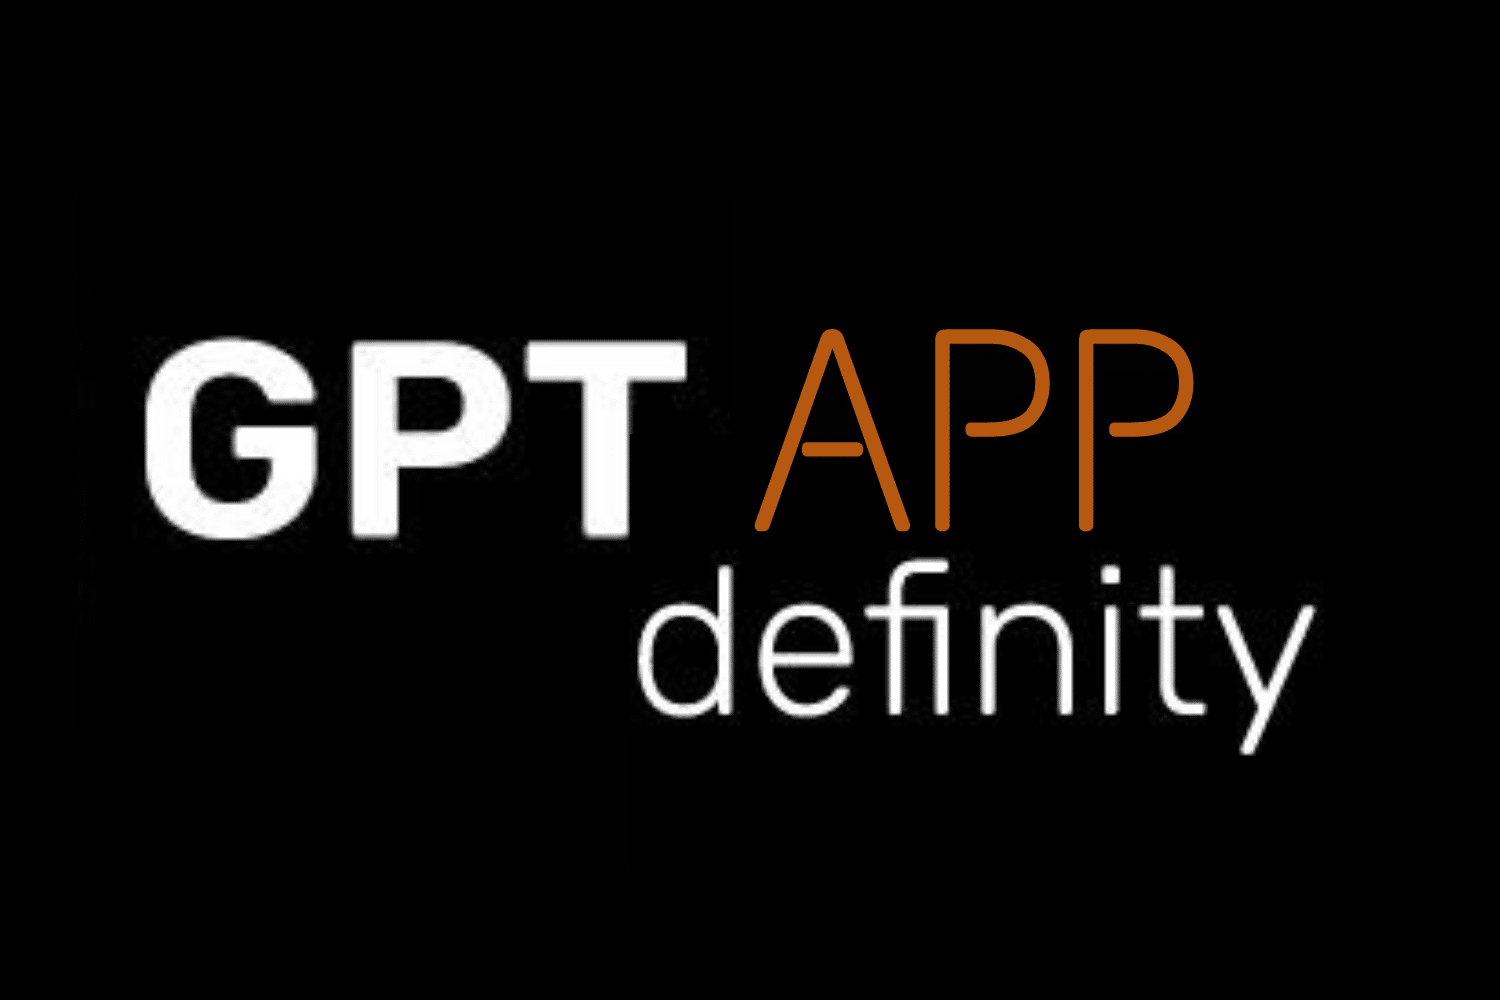 Rejestracja w definicji aplikacji GPT